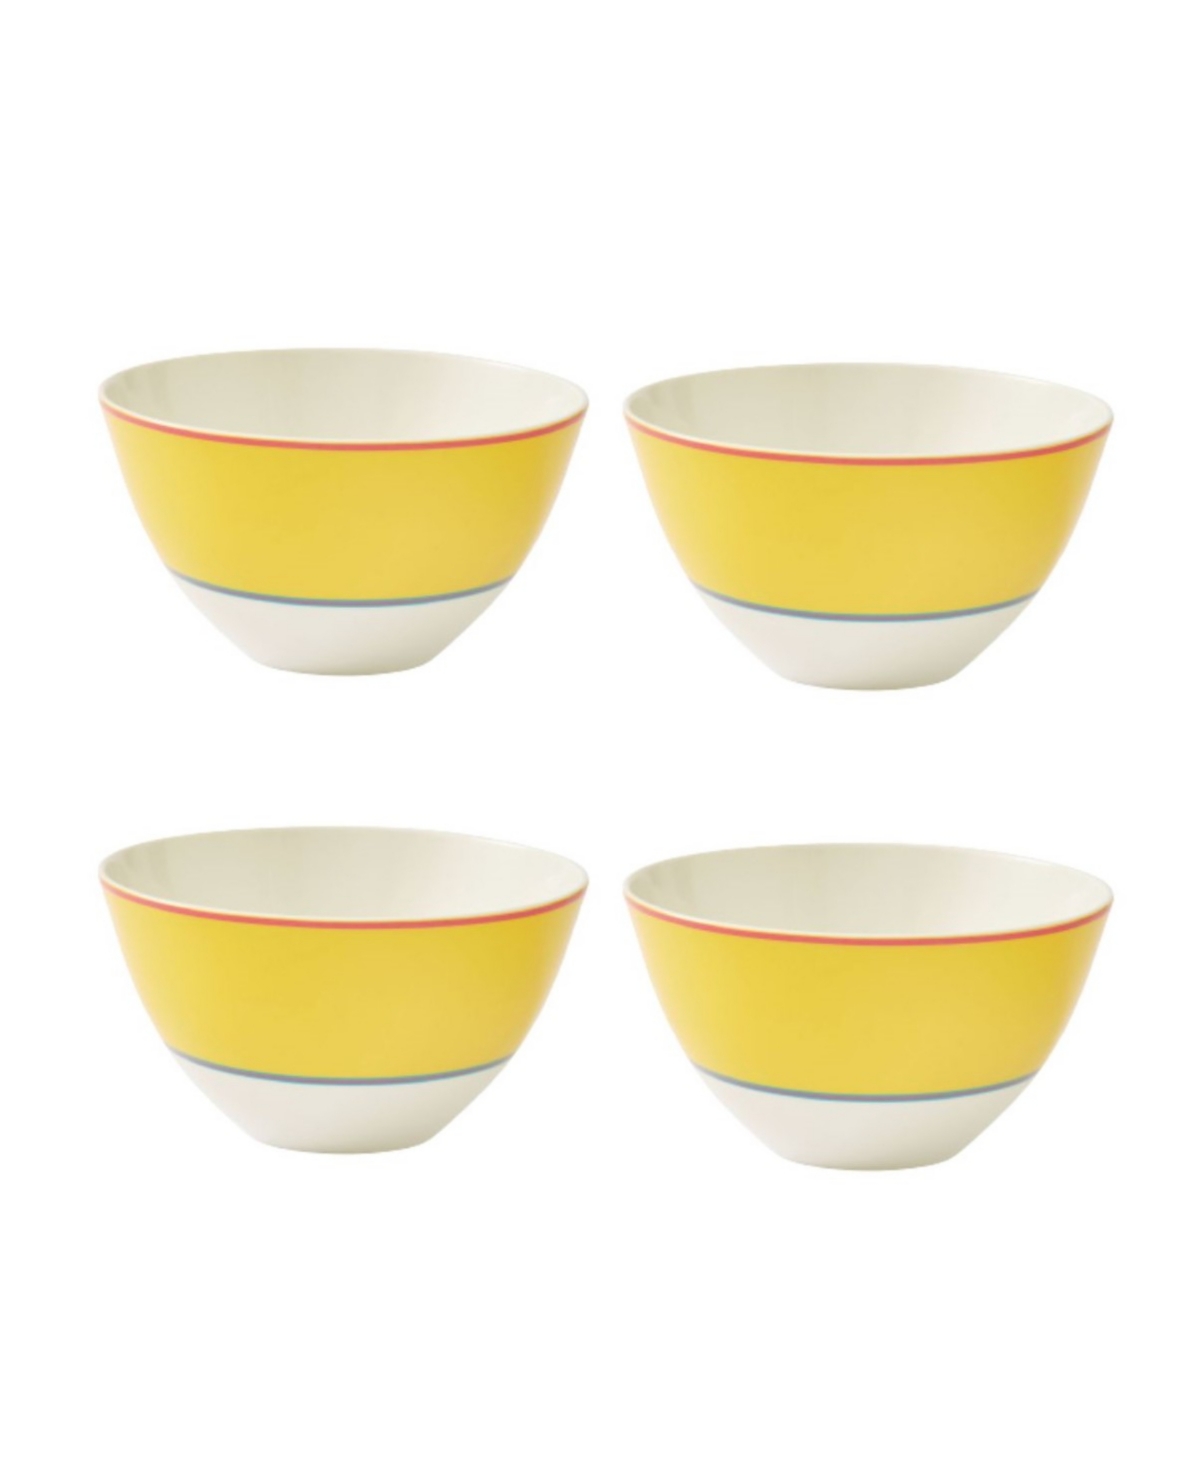 Calypso 4 Piece Bowls Set, Service for 4 - Stripe